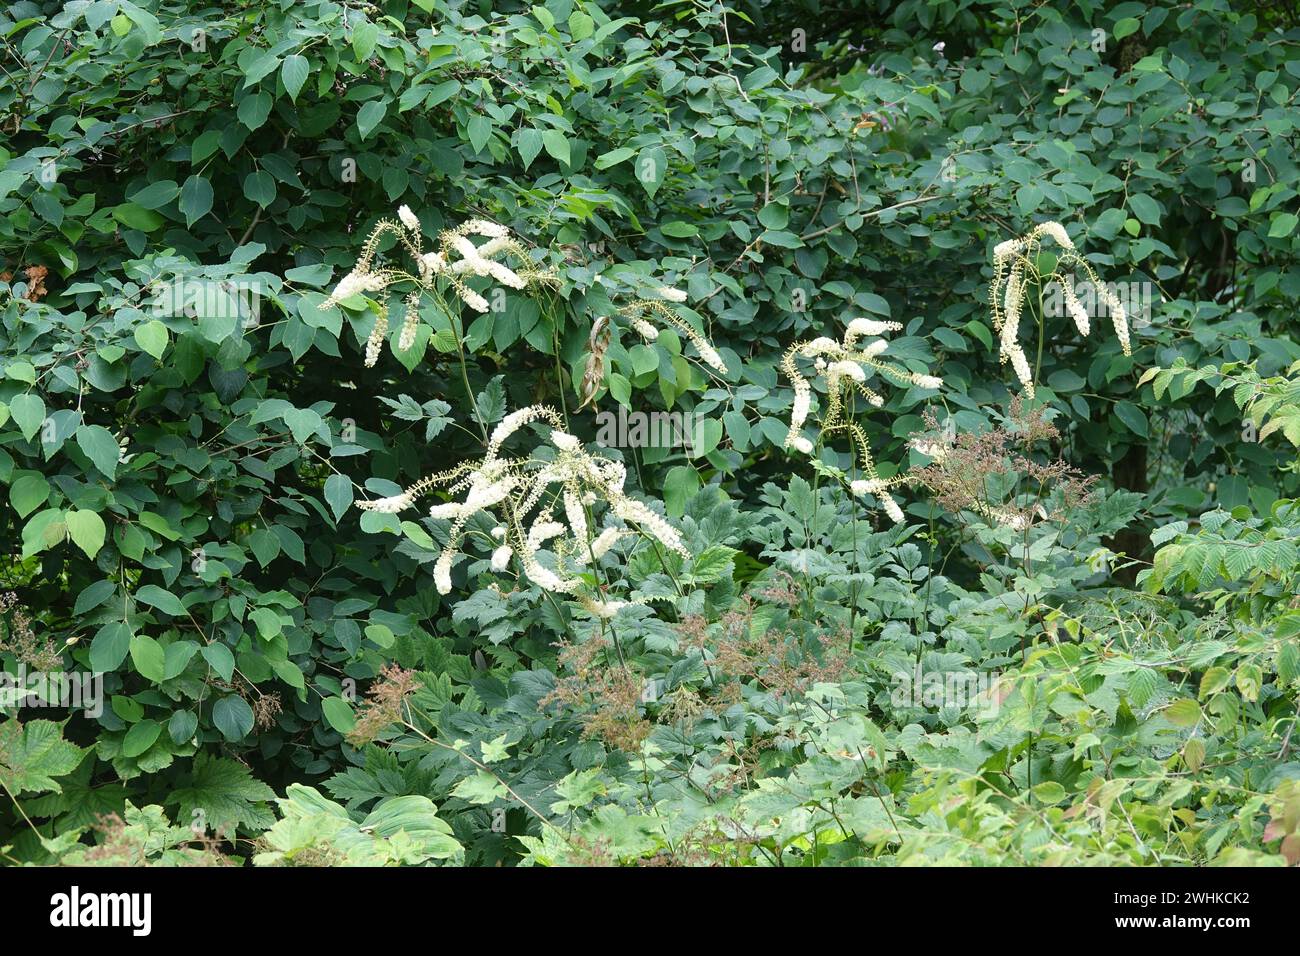 Cimicifuga japonica, Japanese bugbane Stock Photo